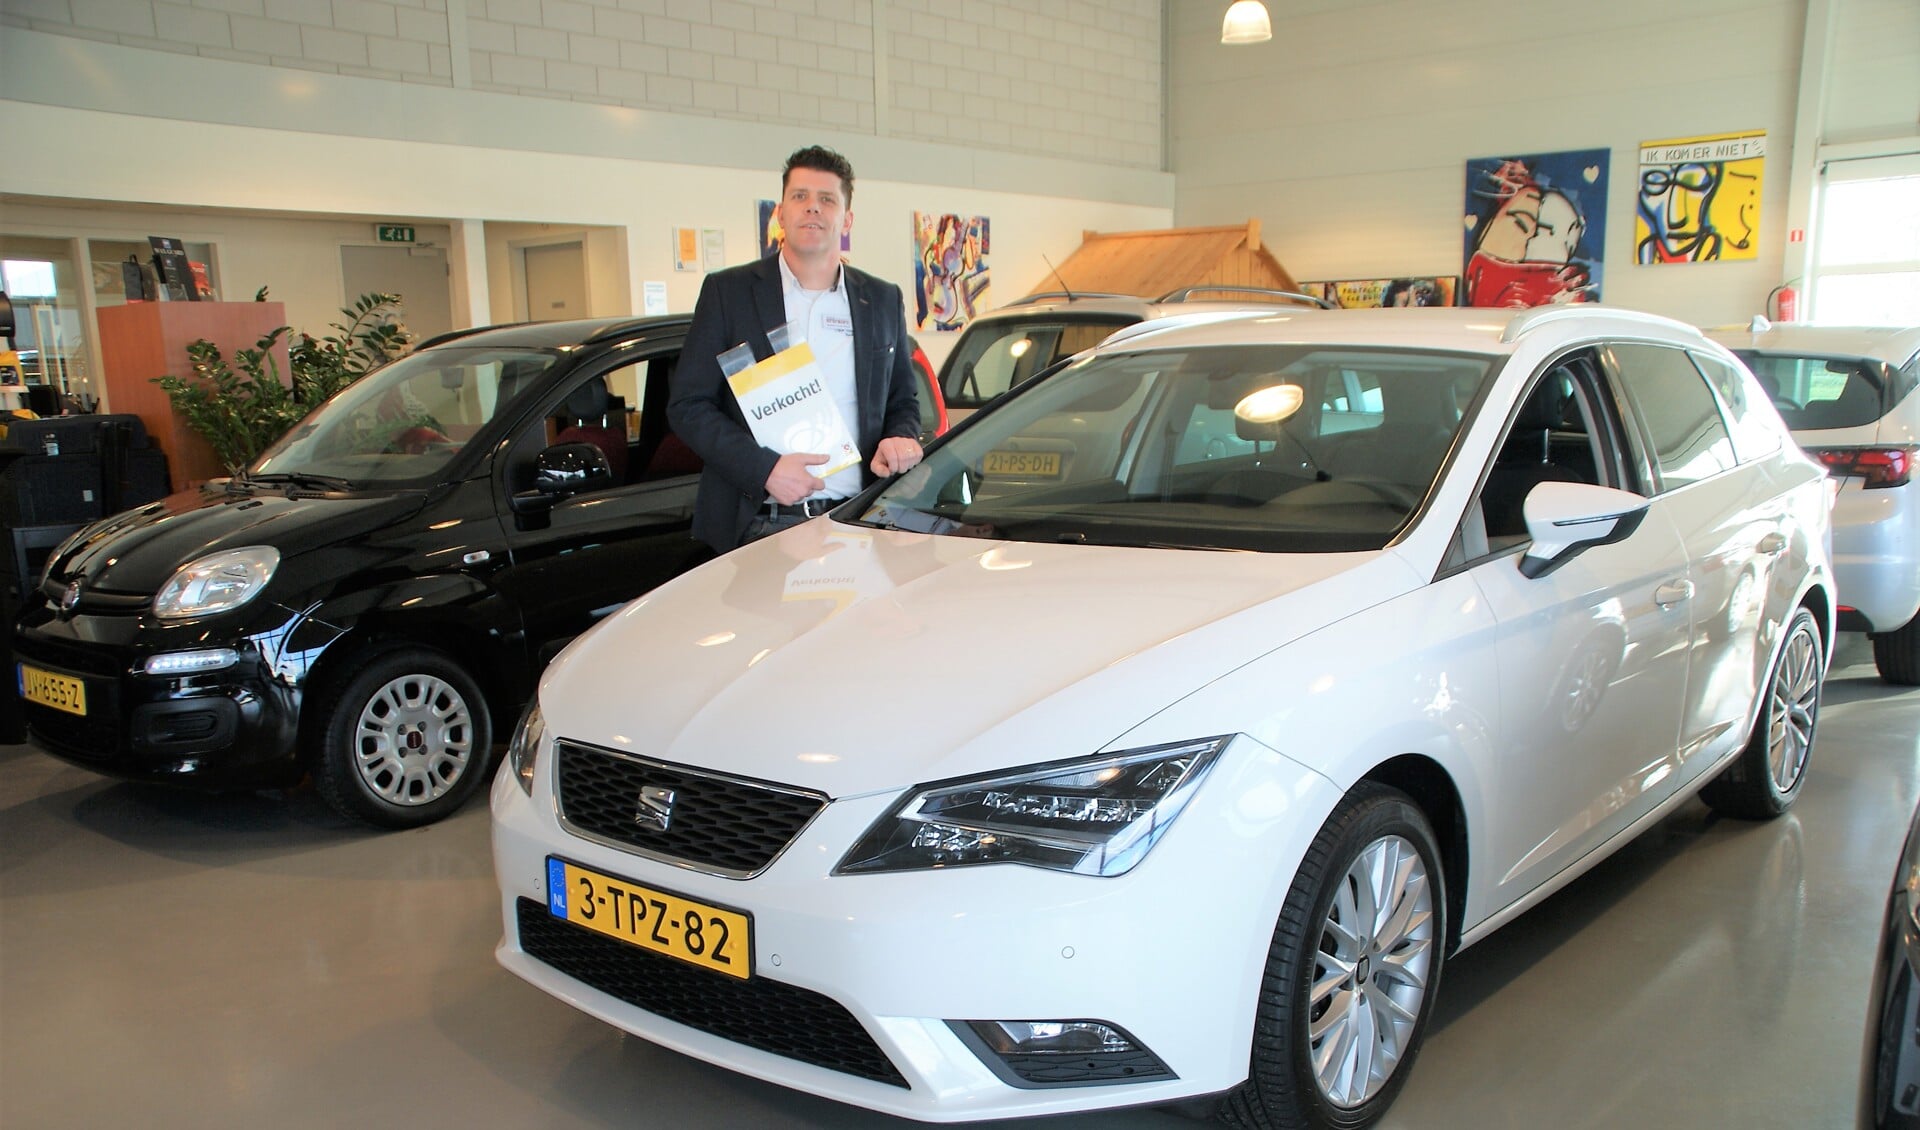 Herbert van der Windt in de showroom bij een net verkochte auto. (foto: ML)